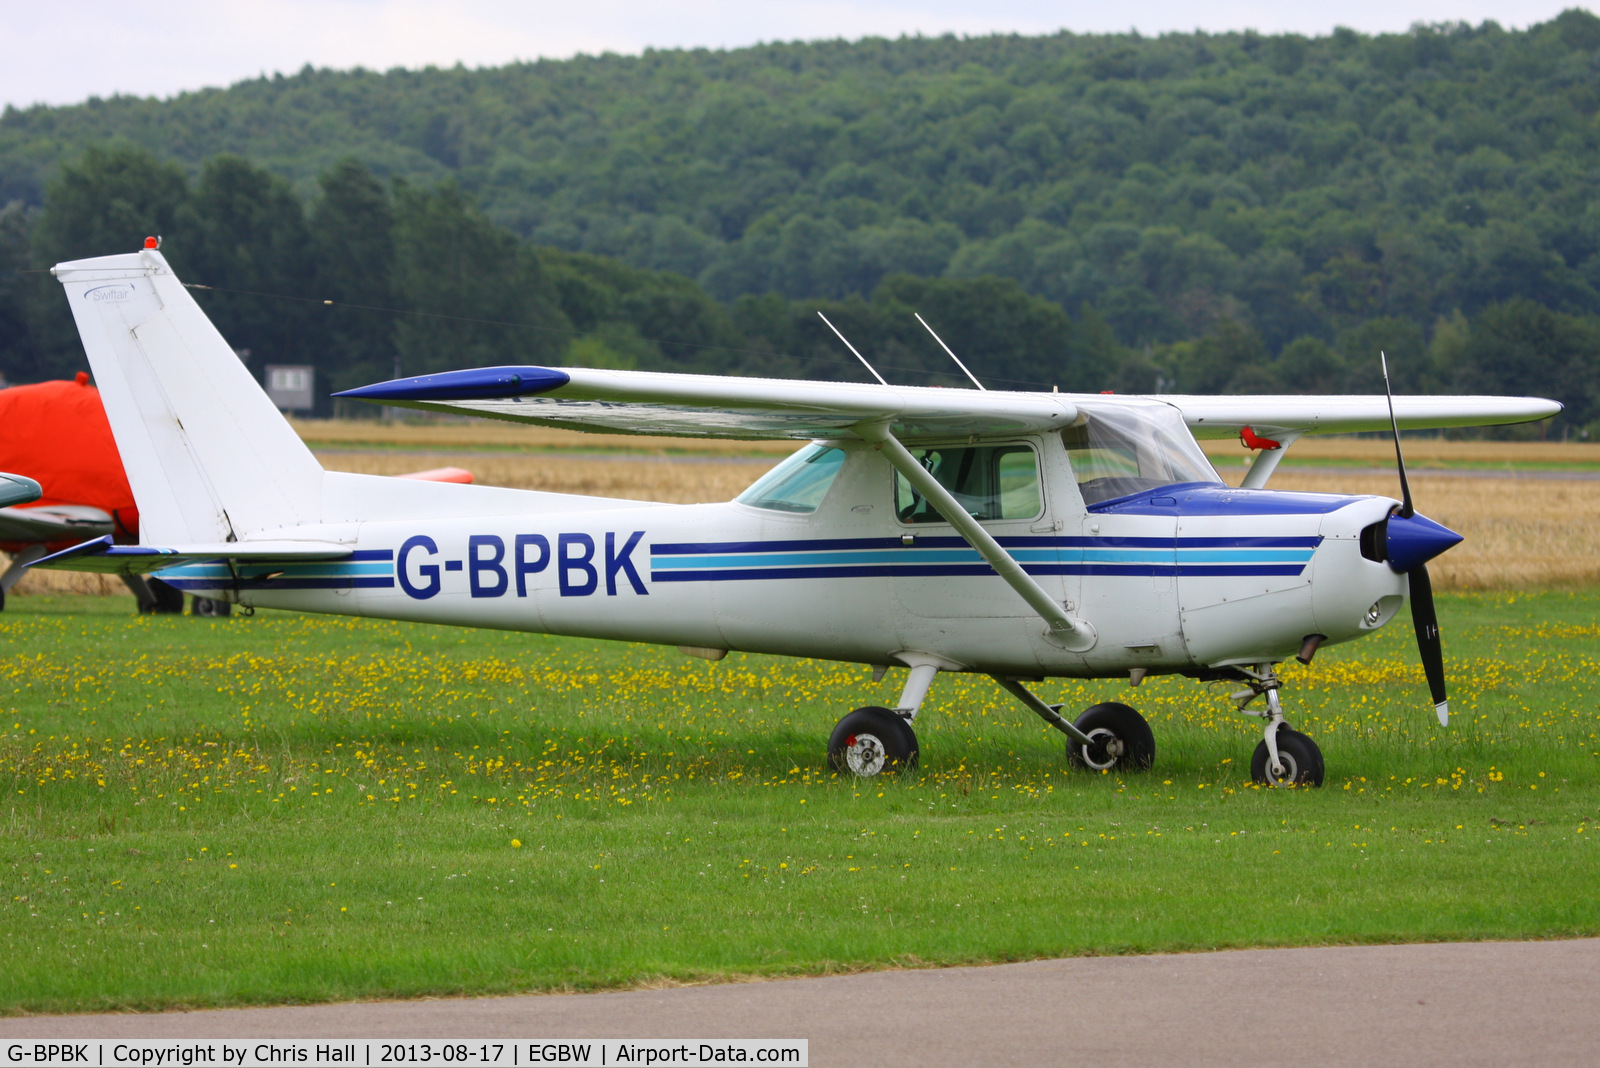 G-BPBK, 1979 Cessna 152 C/N 152-83417, Swiftair maintenance